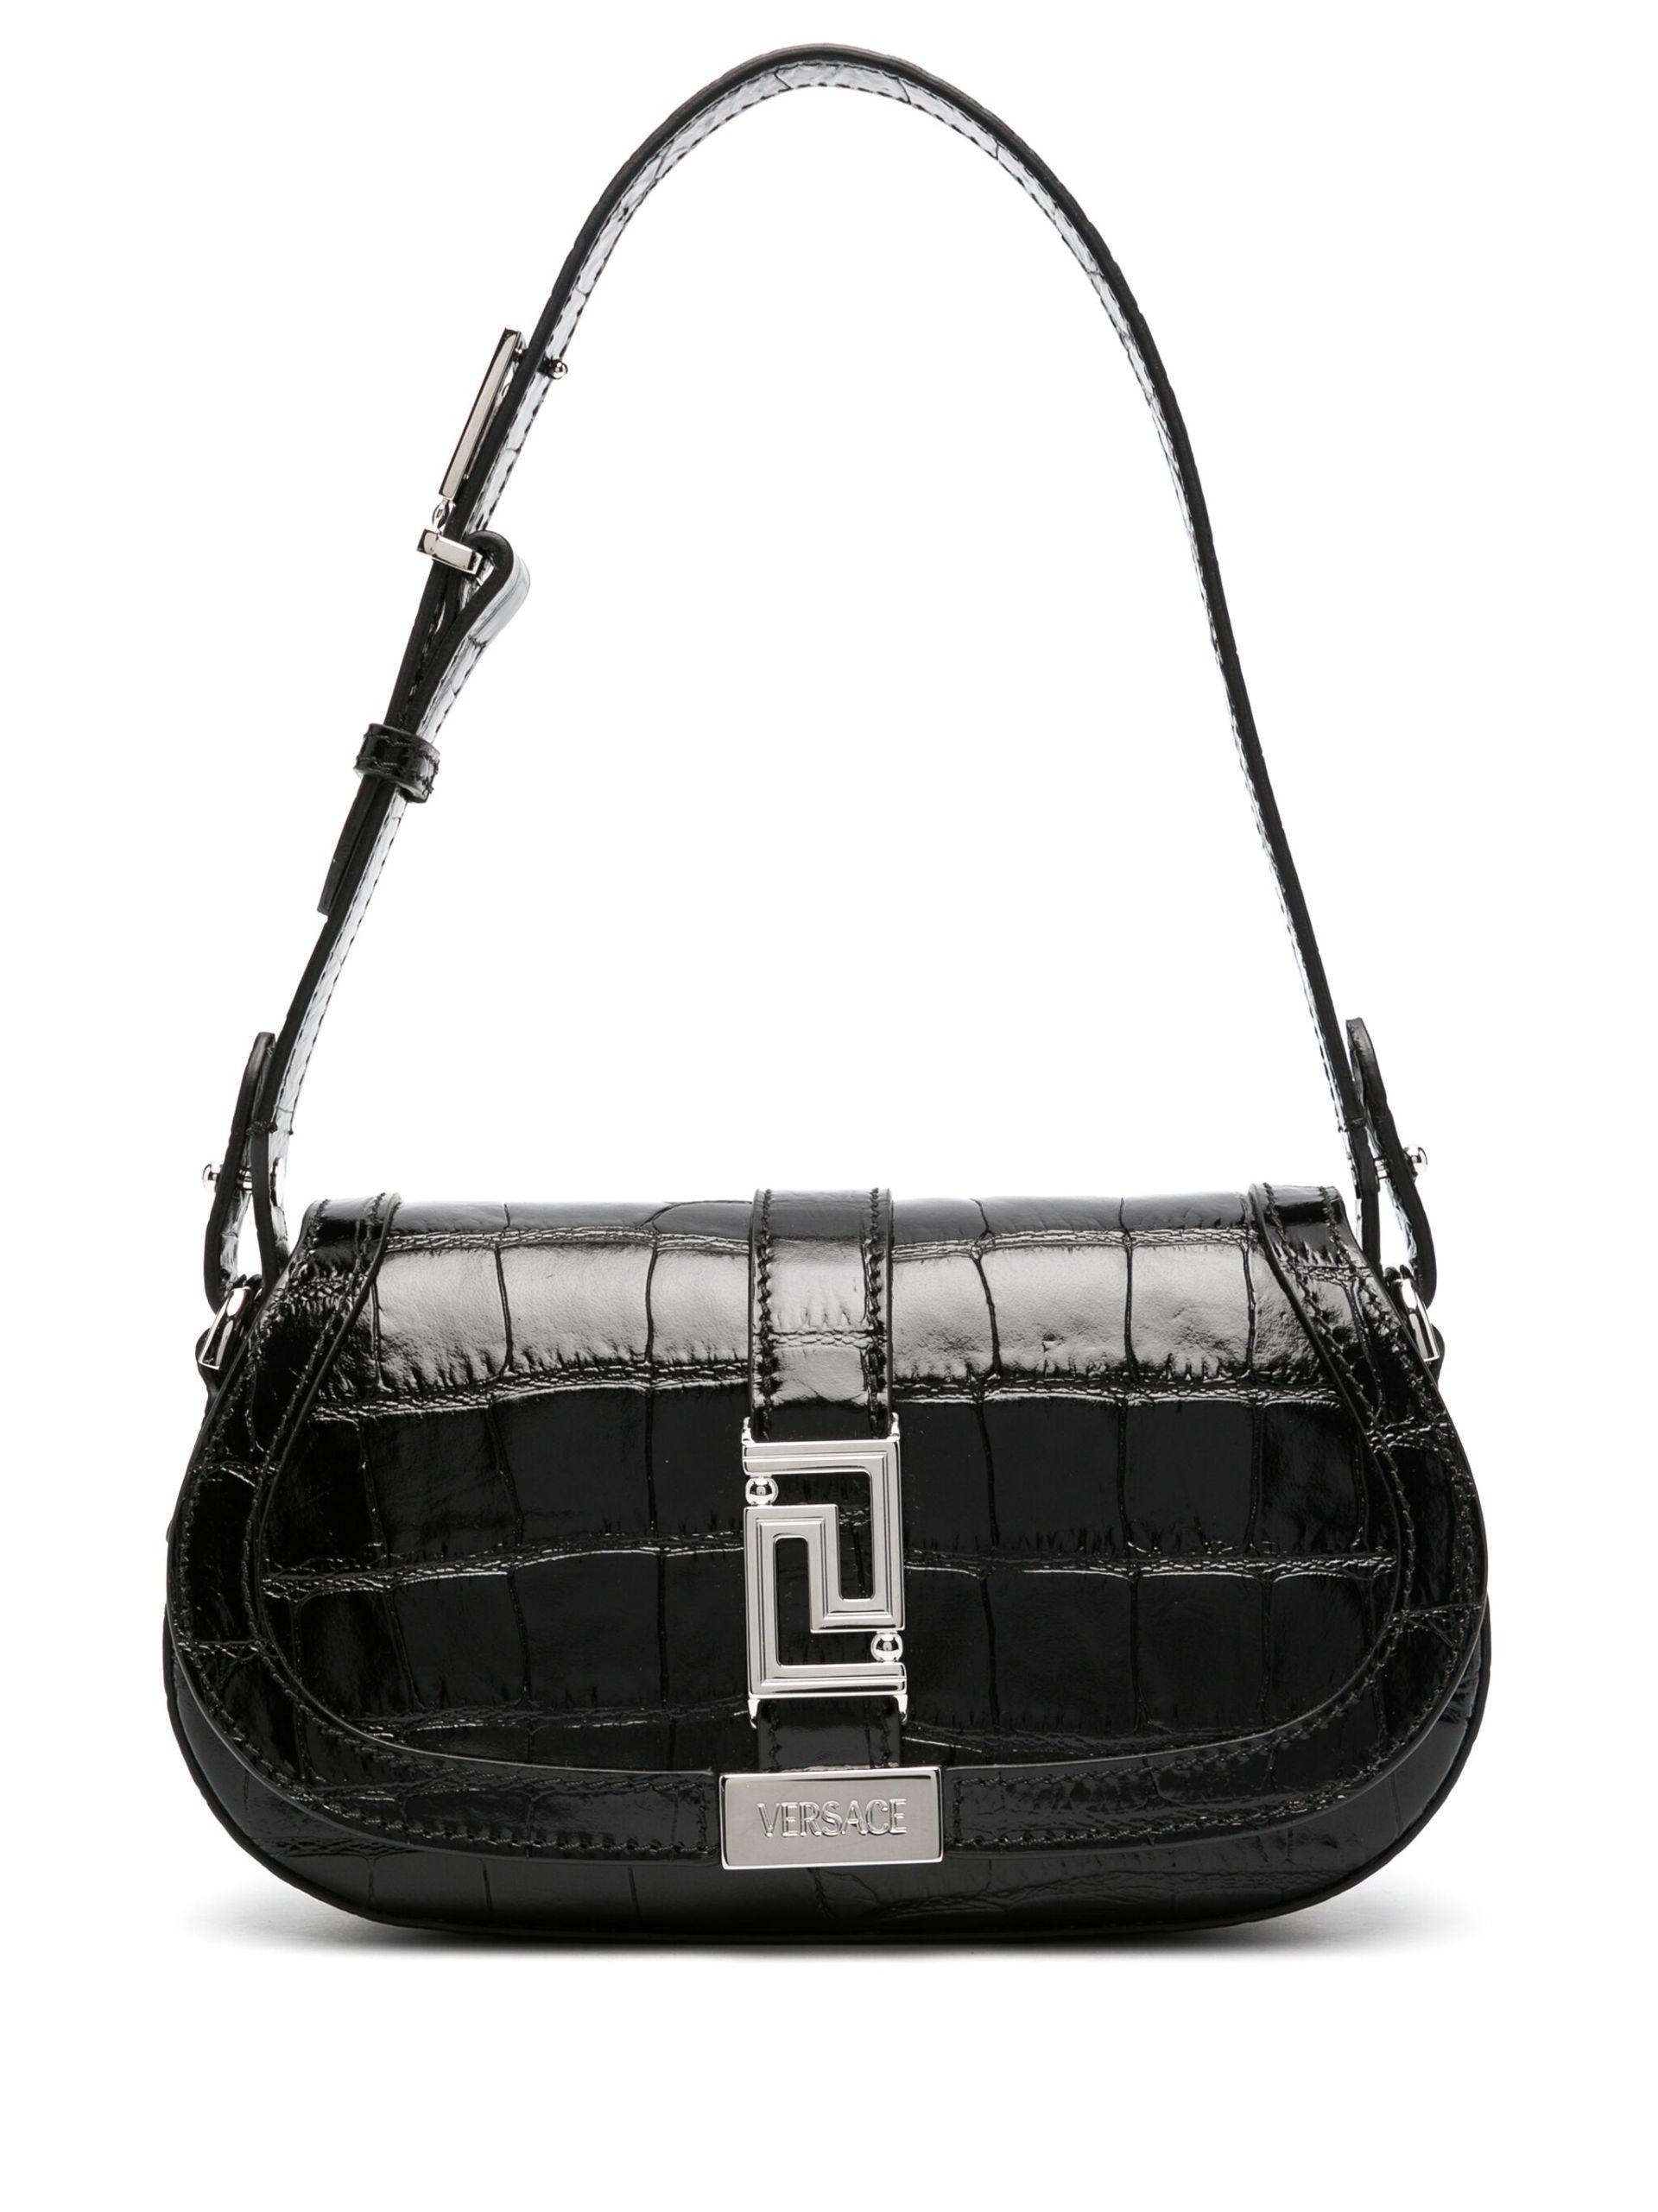 Greca Goddess Leather Shoulder Bag in Black - Versace